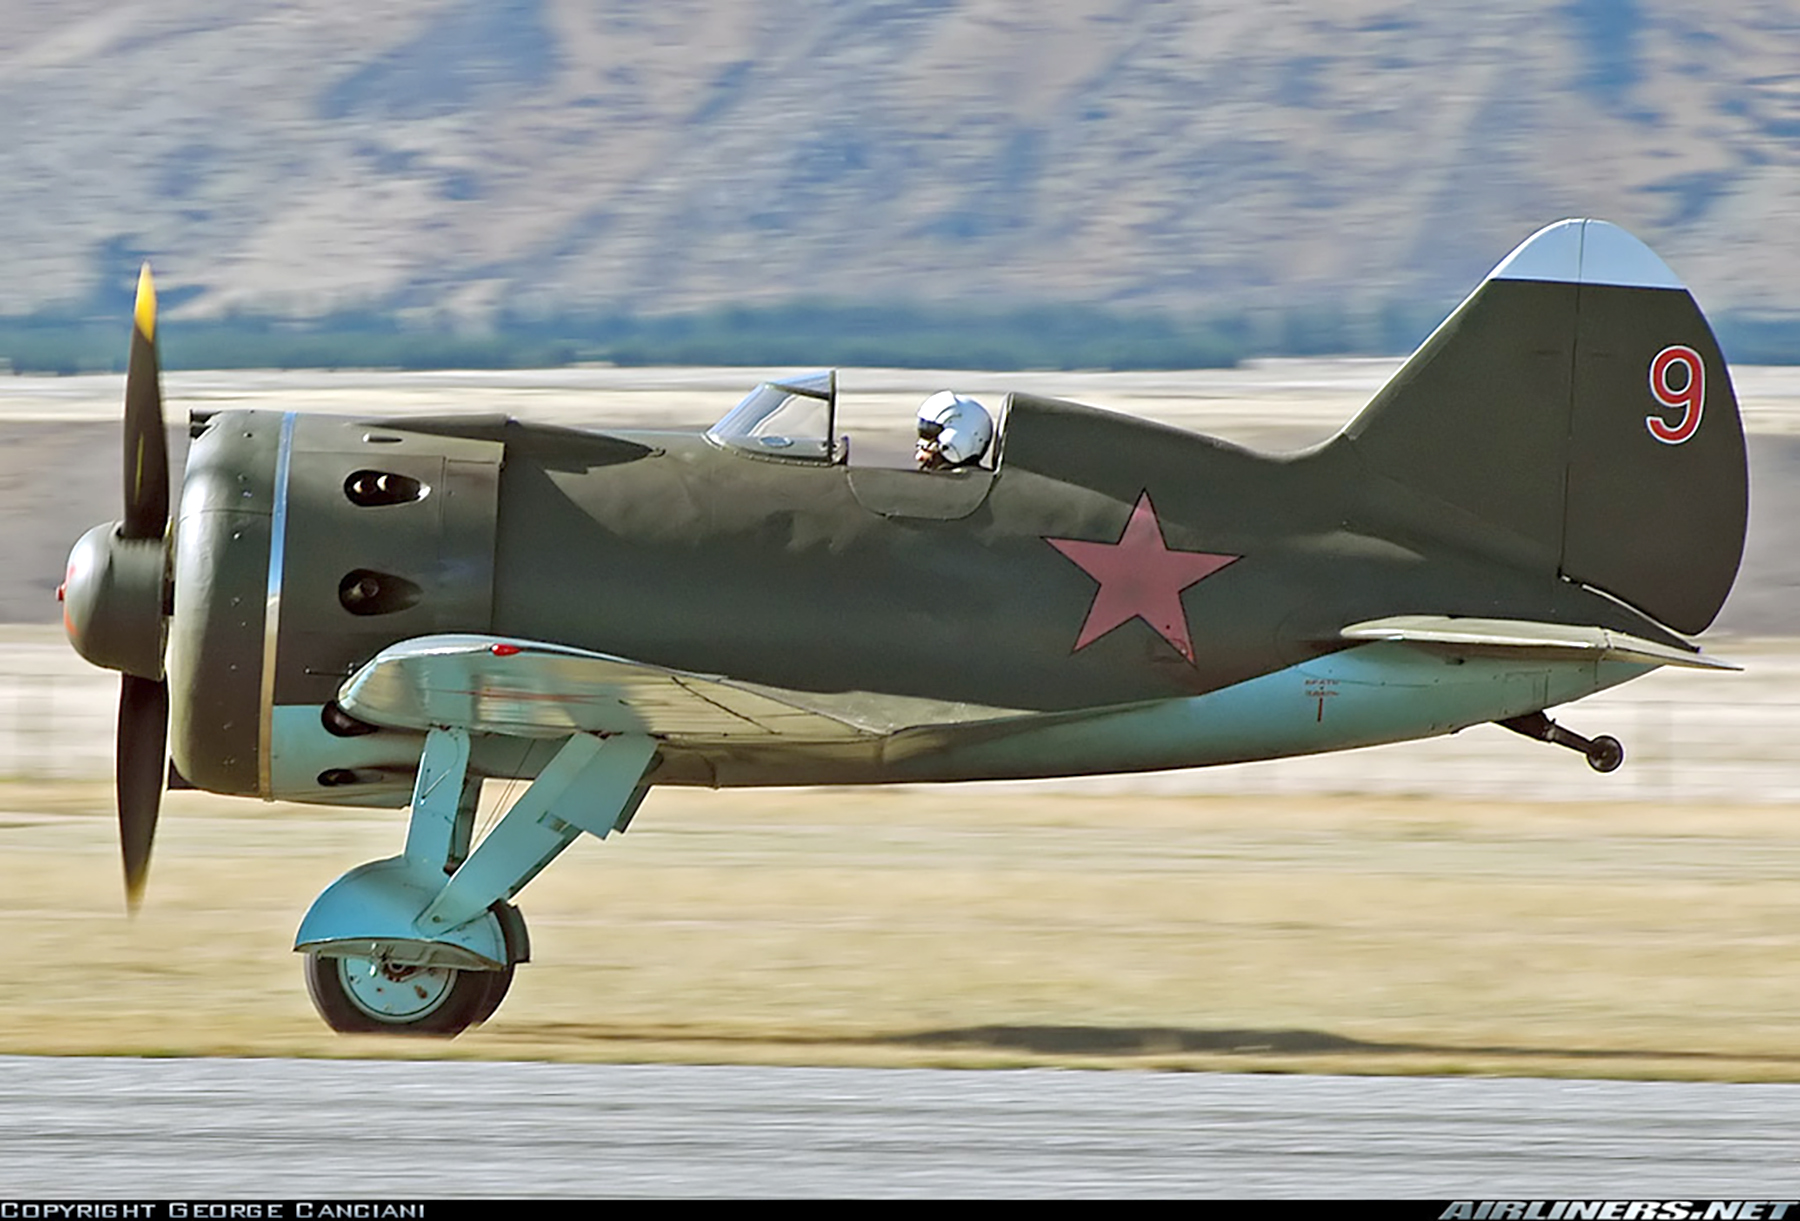 Airworthy Polikarpov I 16 type 24 cn 2421319 flying as Red 9 09